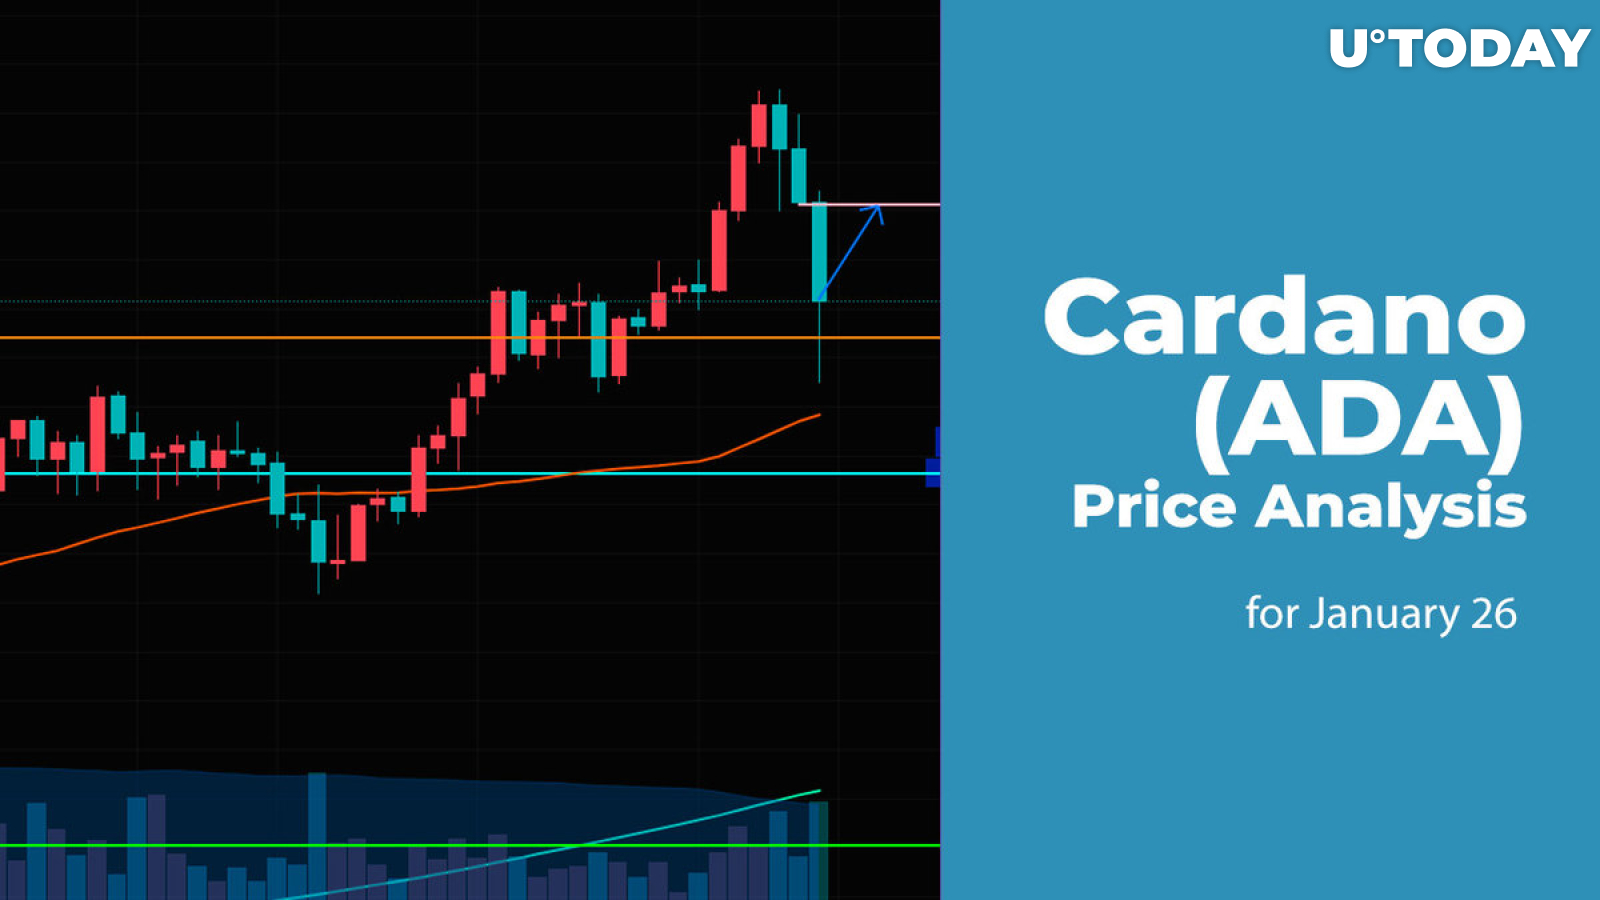 Cardano (ADA) Price Analysis for January 26